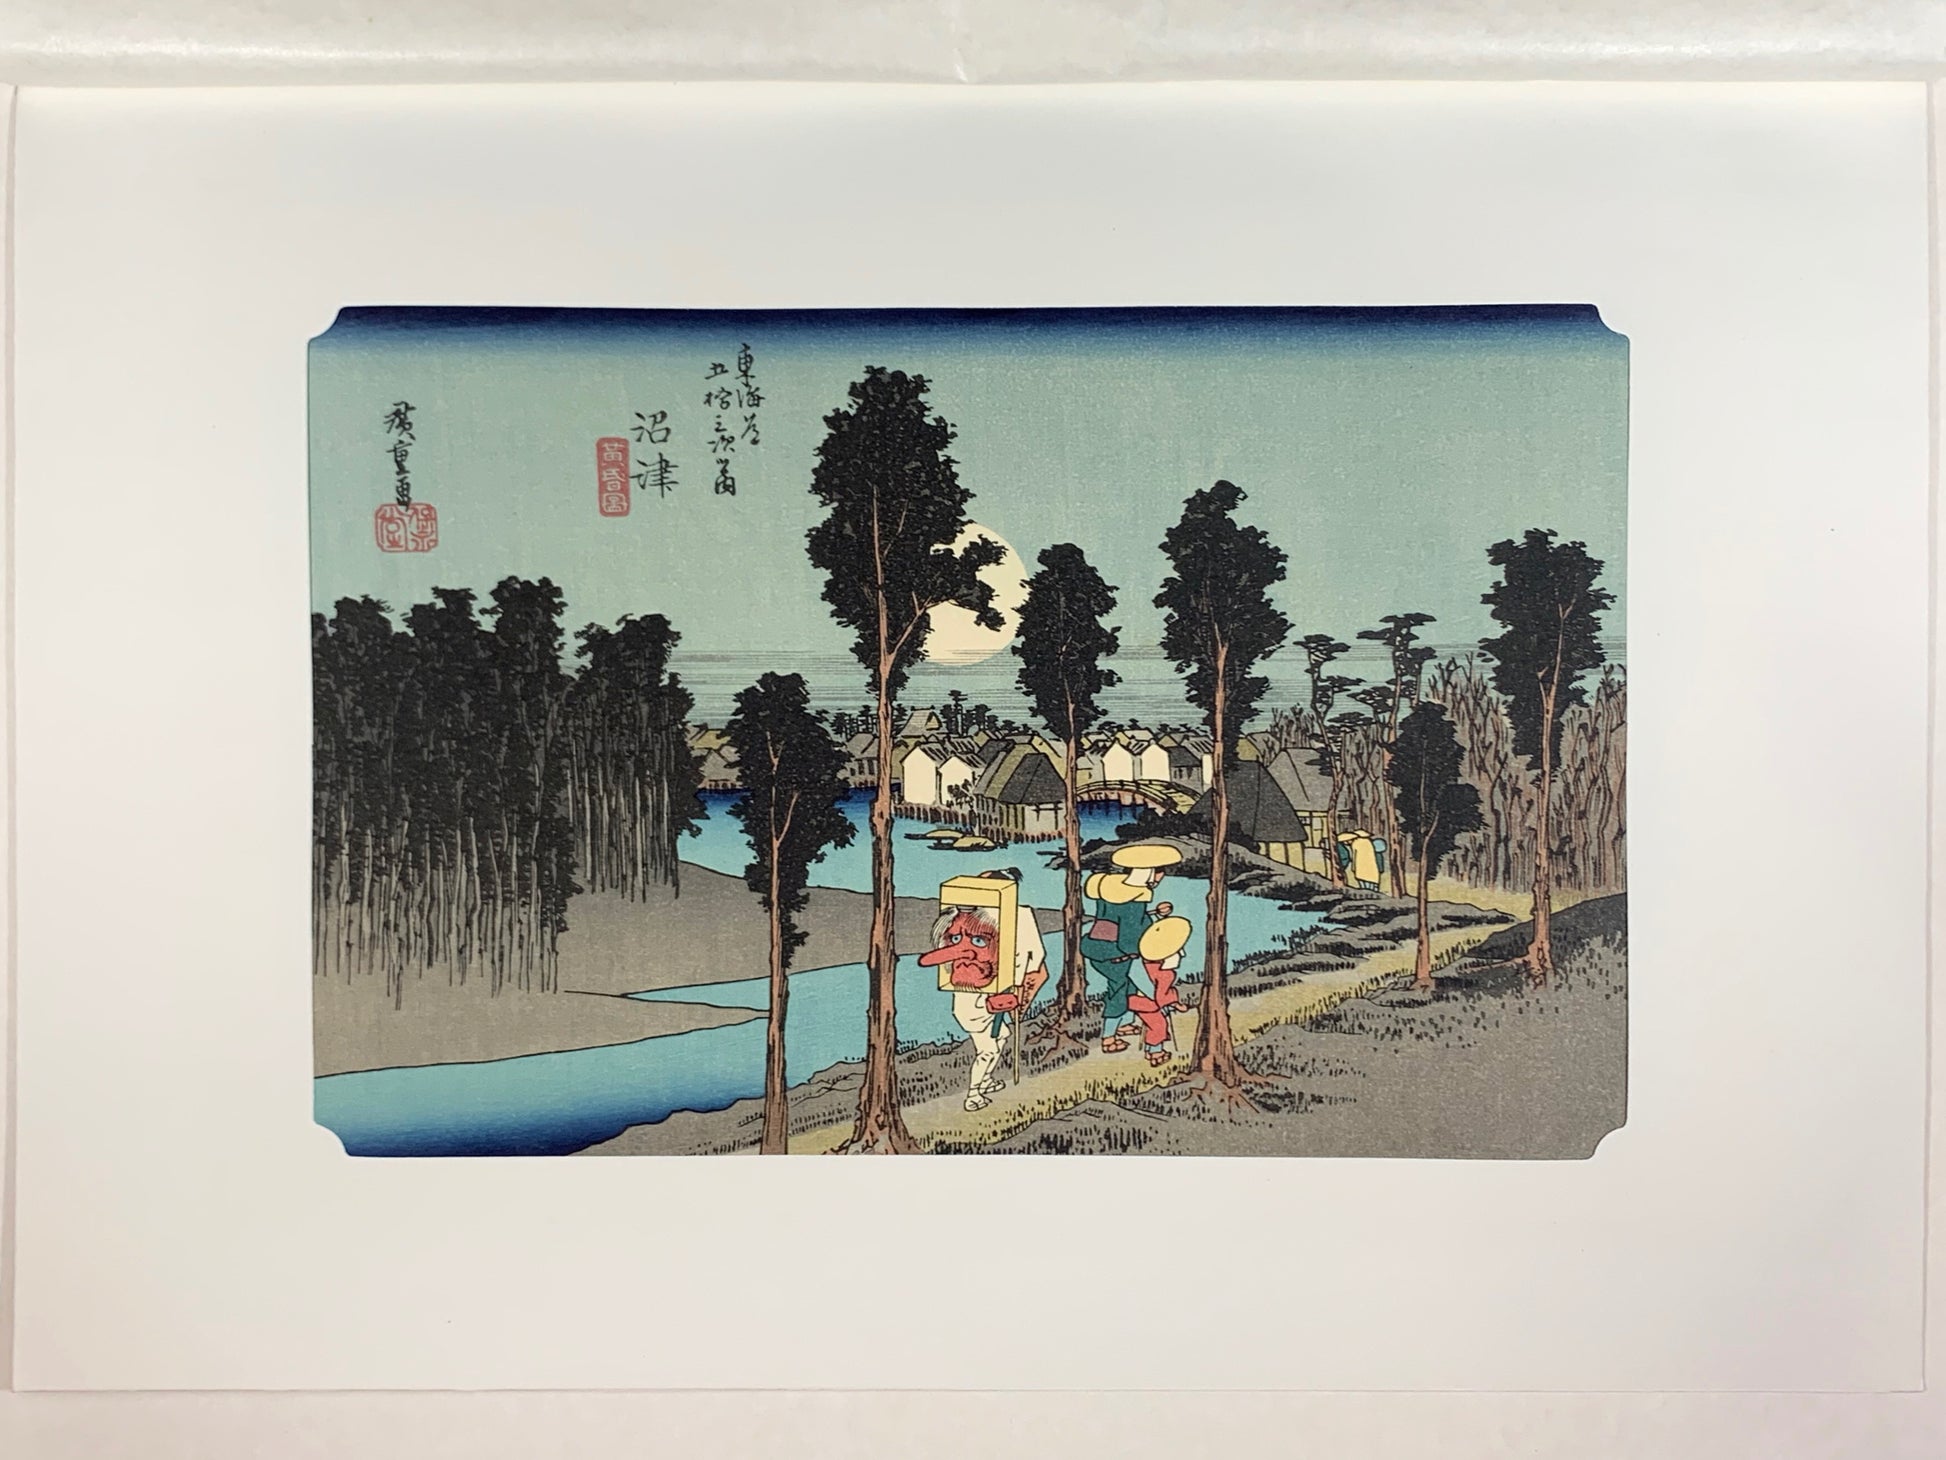 estampe japonaise de Hiroshige, des voyageurs sur la route du Tokaido arrivent au village de Nemazu, sous une nuit de pleine lune, avec le passe-partout d'origine